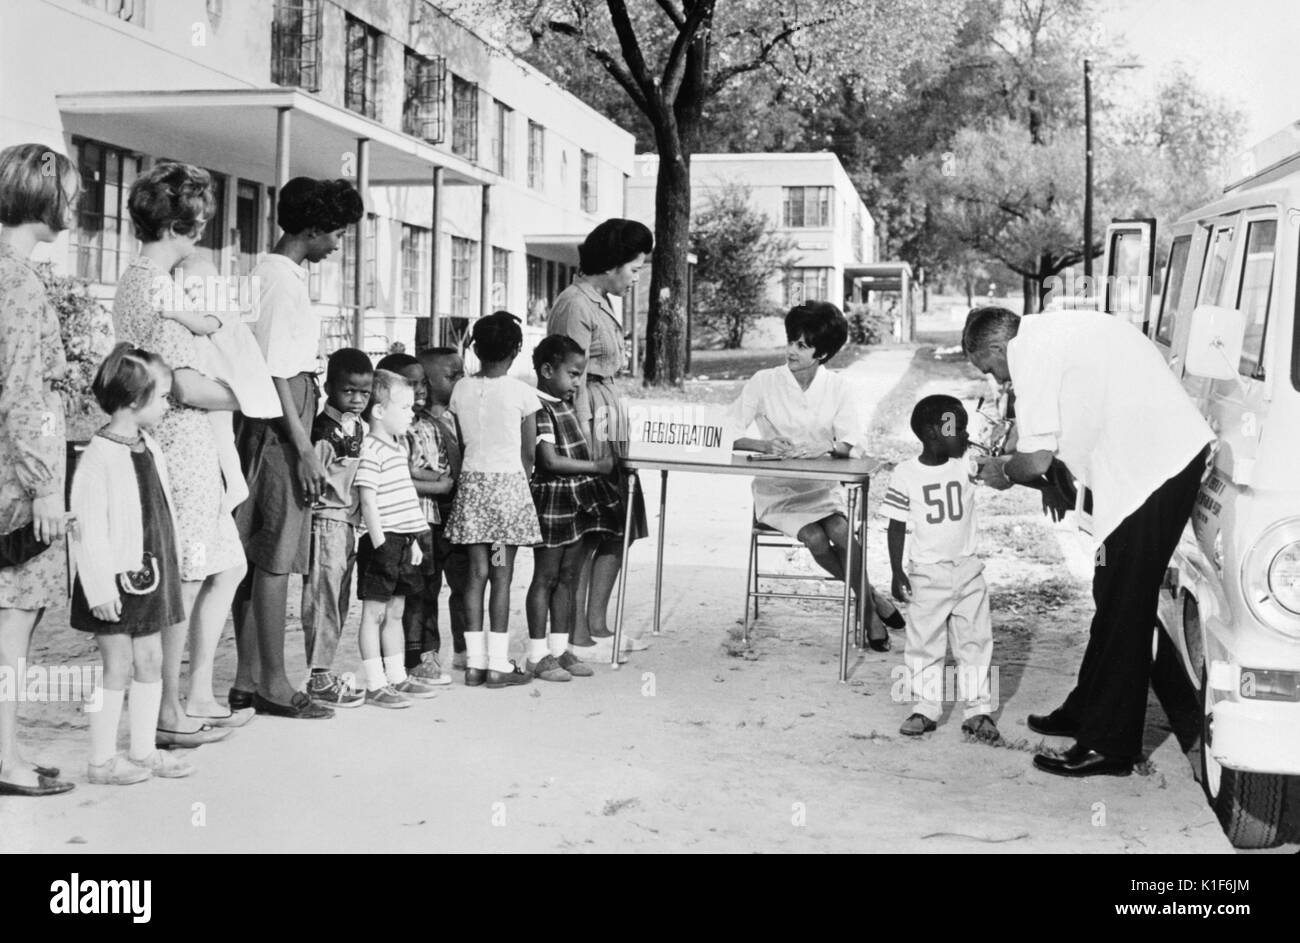 Dieses 1976 Foto zeigt eine multiethnische Gruppe Frauen und Kinder in einem Gehäuse Projekt Futter bis zu einer mobilen Klinik für das Warten und das Empfangen von Impfungen. Die Szene enthält auch einen Arzt, der die Verwaltung der Einspritzungen wurde, und eine Krankenschwester, die Registrierung der Kinder durch elterliche Beteiligung. Für eine Farbe Version dieses Bild, siehe PHIL 17503. Dieses Szenario war in einem hypothetischen Dixon Lenkstange County, USA entfernt worden und wurde als Lehrmittel im Hinblick auf die Prävention von Impfstoff - vermeidbare Krankheiten verwendet. Mit freundlicher CDC/Reguel Waldrop, 1972. Stockfoto